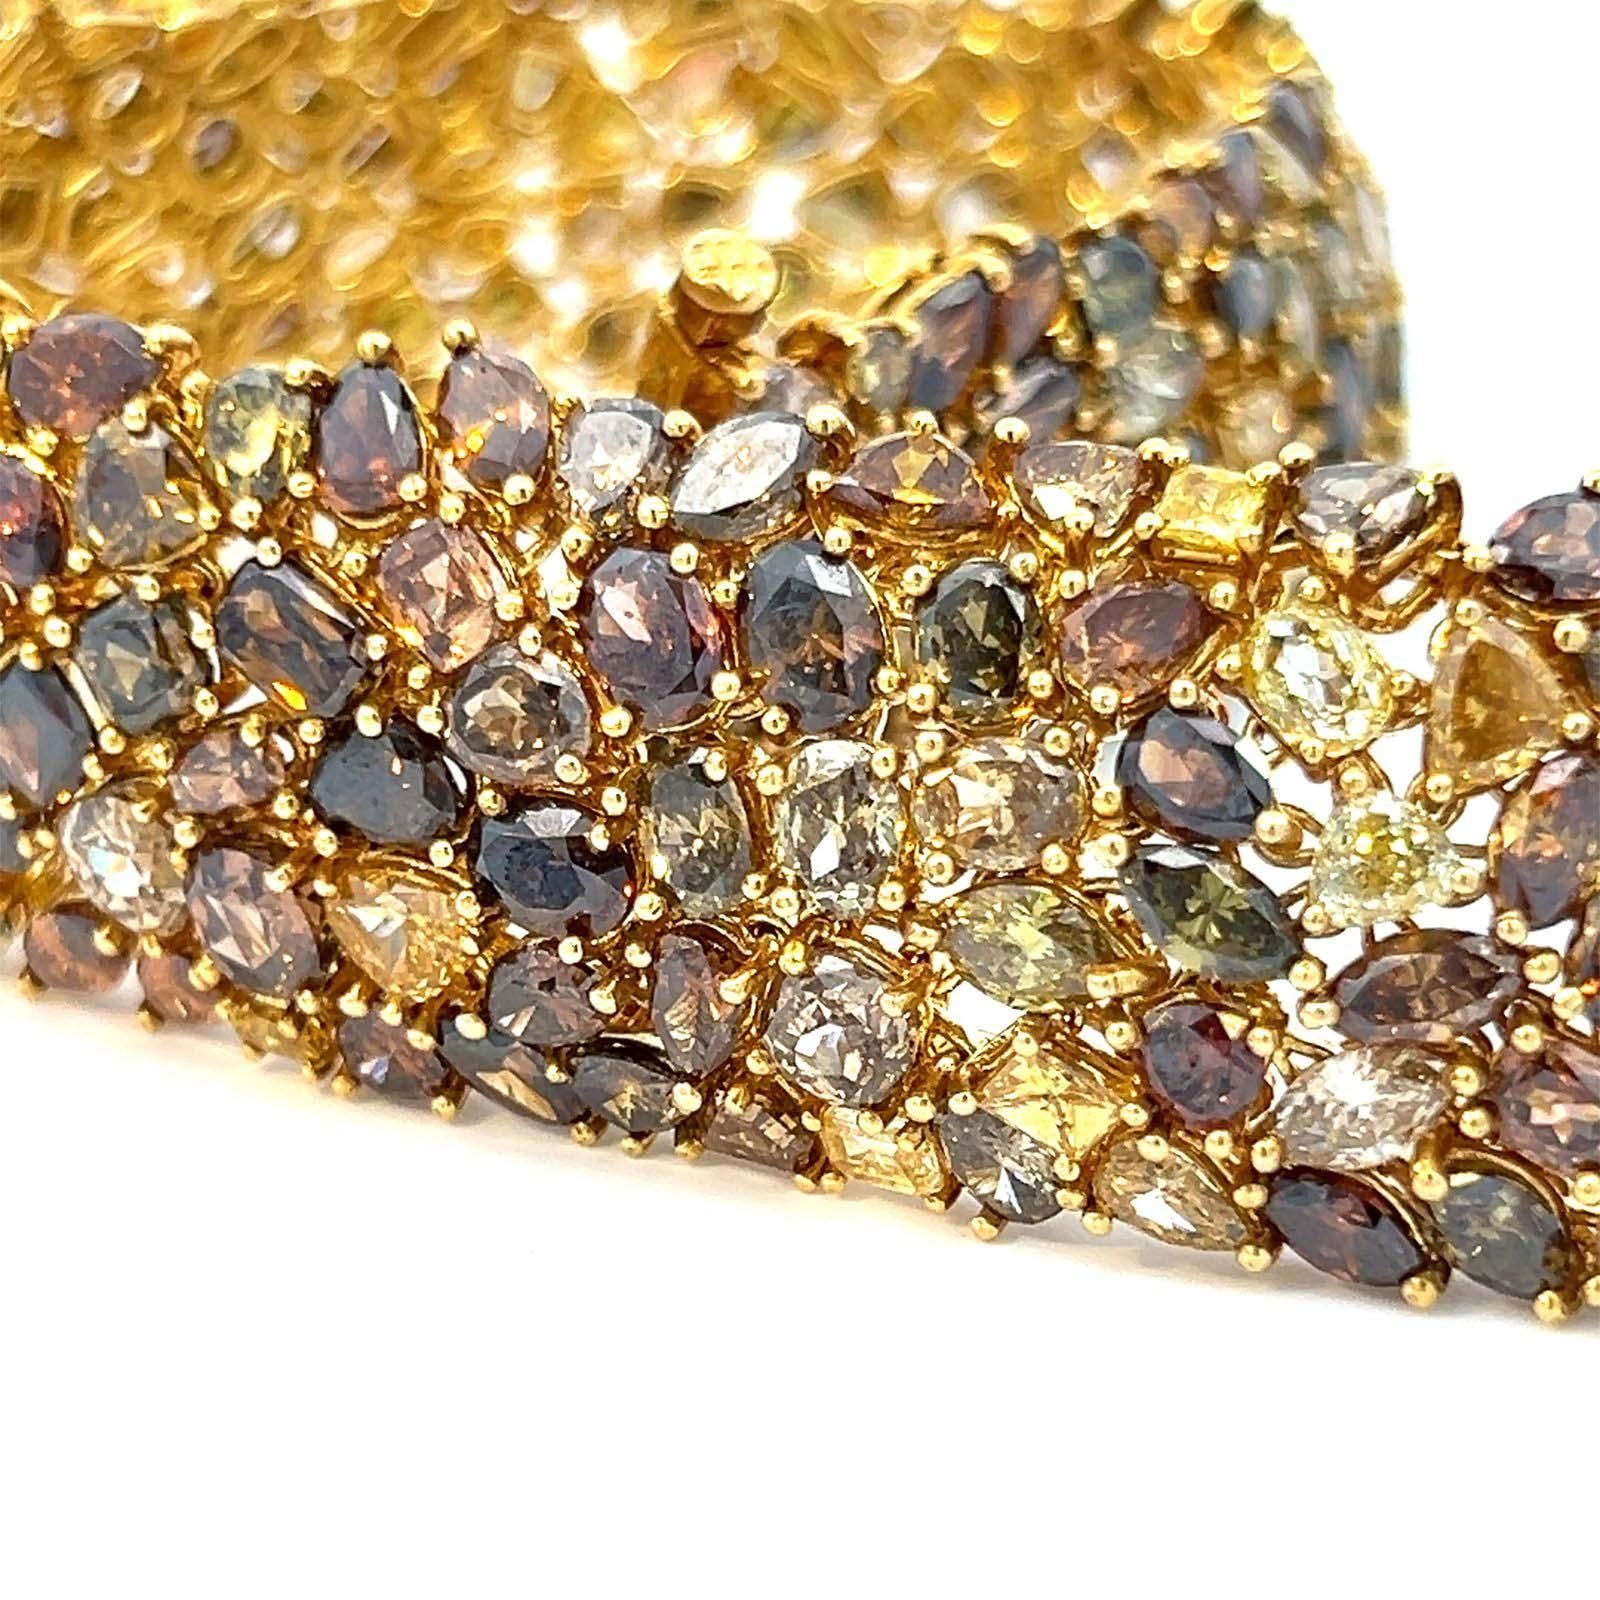 Bracelet en or jaune 18 carats avec un incroyable 67,25 carats de diamants de couleur fantaisie. Réalisée avec une attention méticuleuse aux détails, cette pièce unique présente un ensemble captivant de 235 diamants jaunes, orange, bruns et verts de